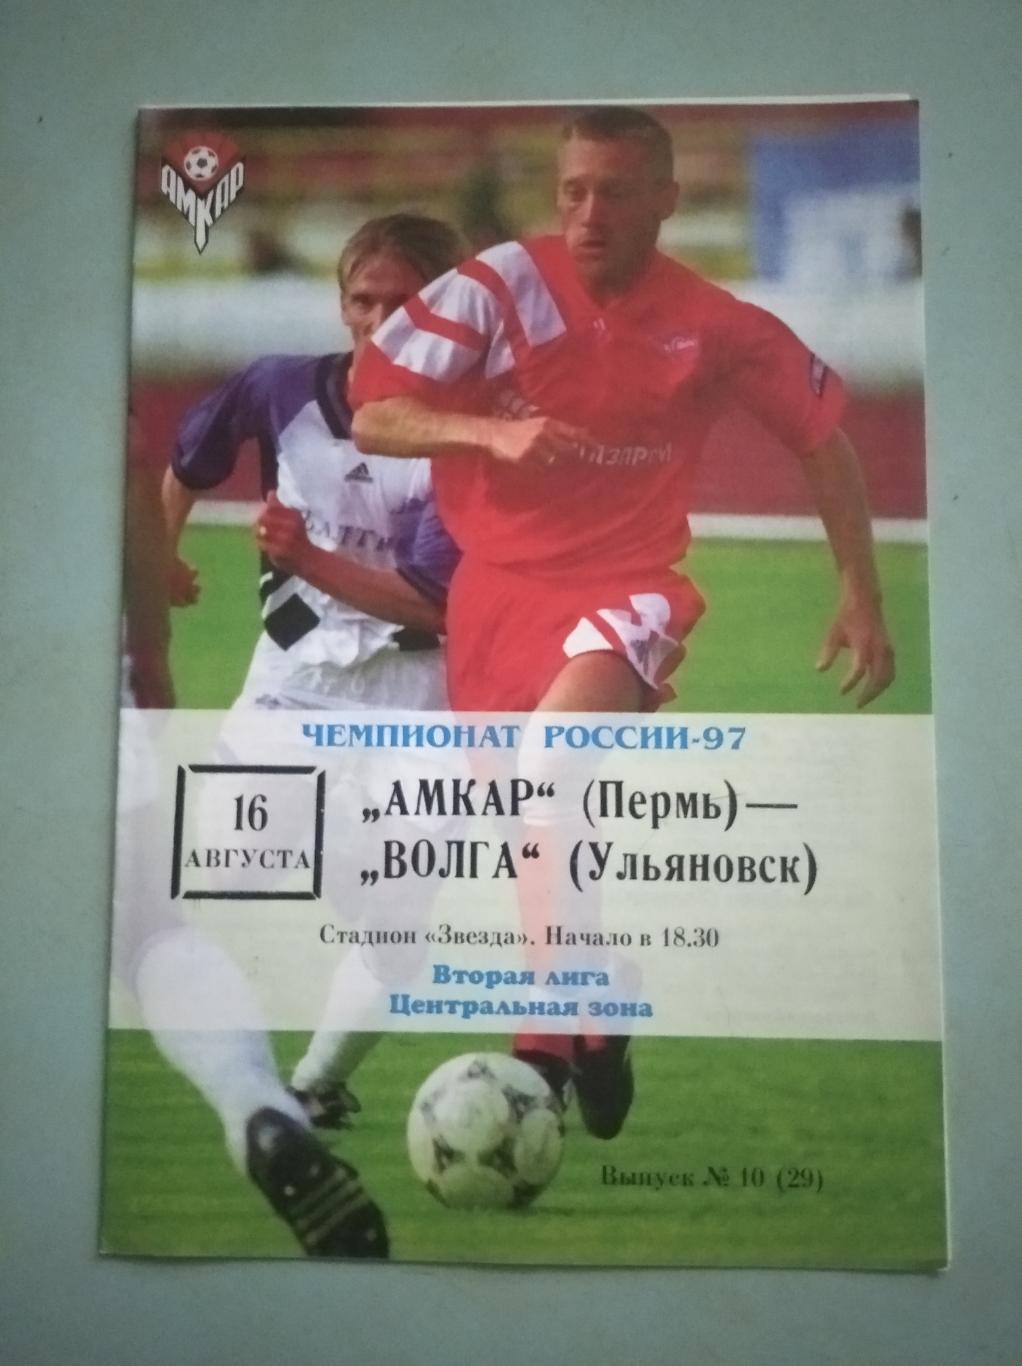 Амкар Пермь - Волга Ульяновск. 16.08.1997